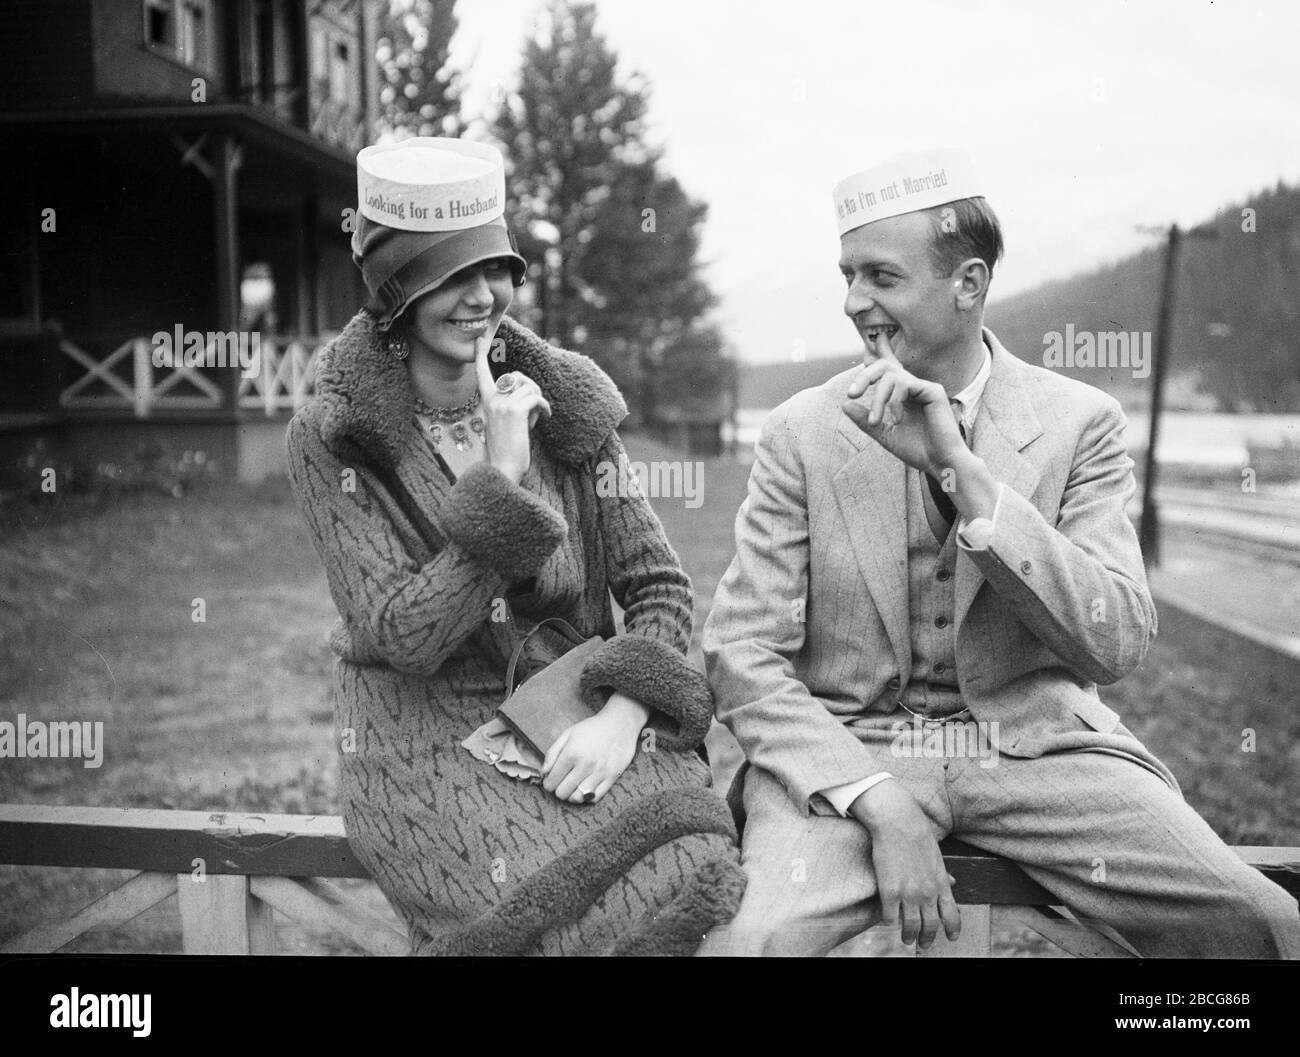 Un uomo e una donna che indossano cappelli divertenti si siedono a grinning  l'uno con le dita appuntate alla bocca, circa 1935. Il cappello della donna  recita "cercando un marito", mentre quello